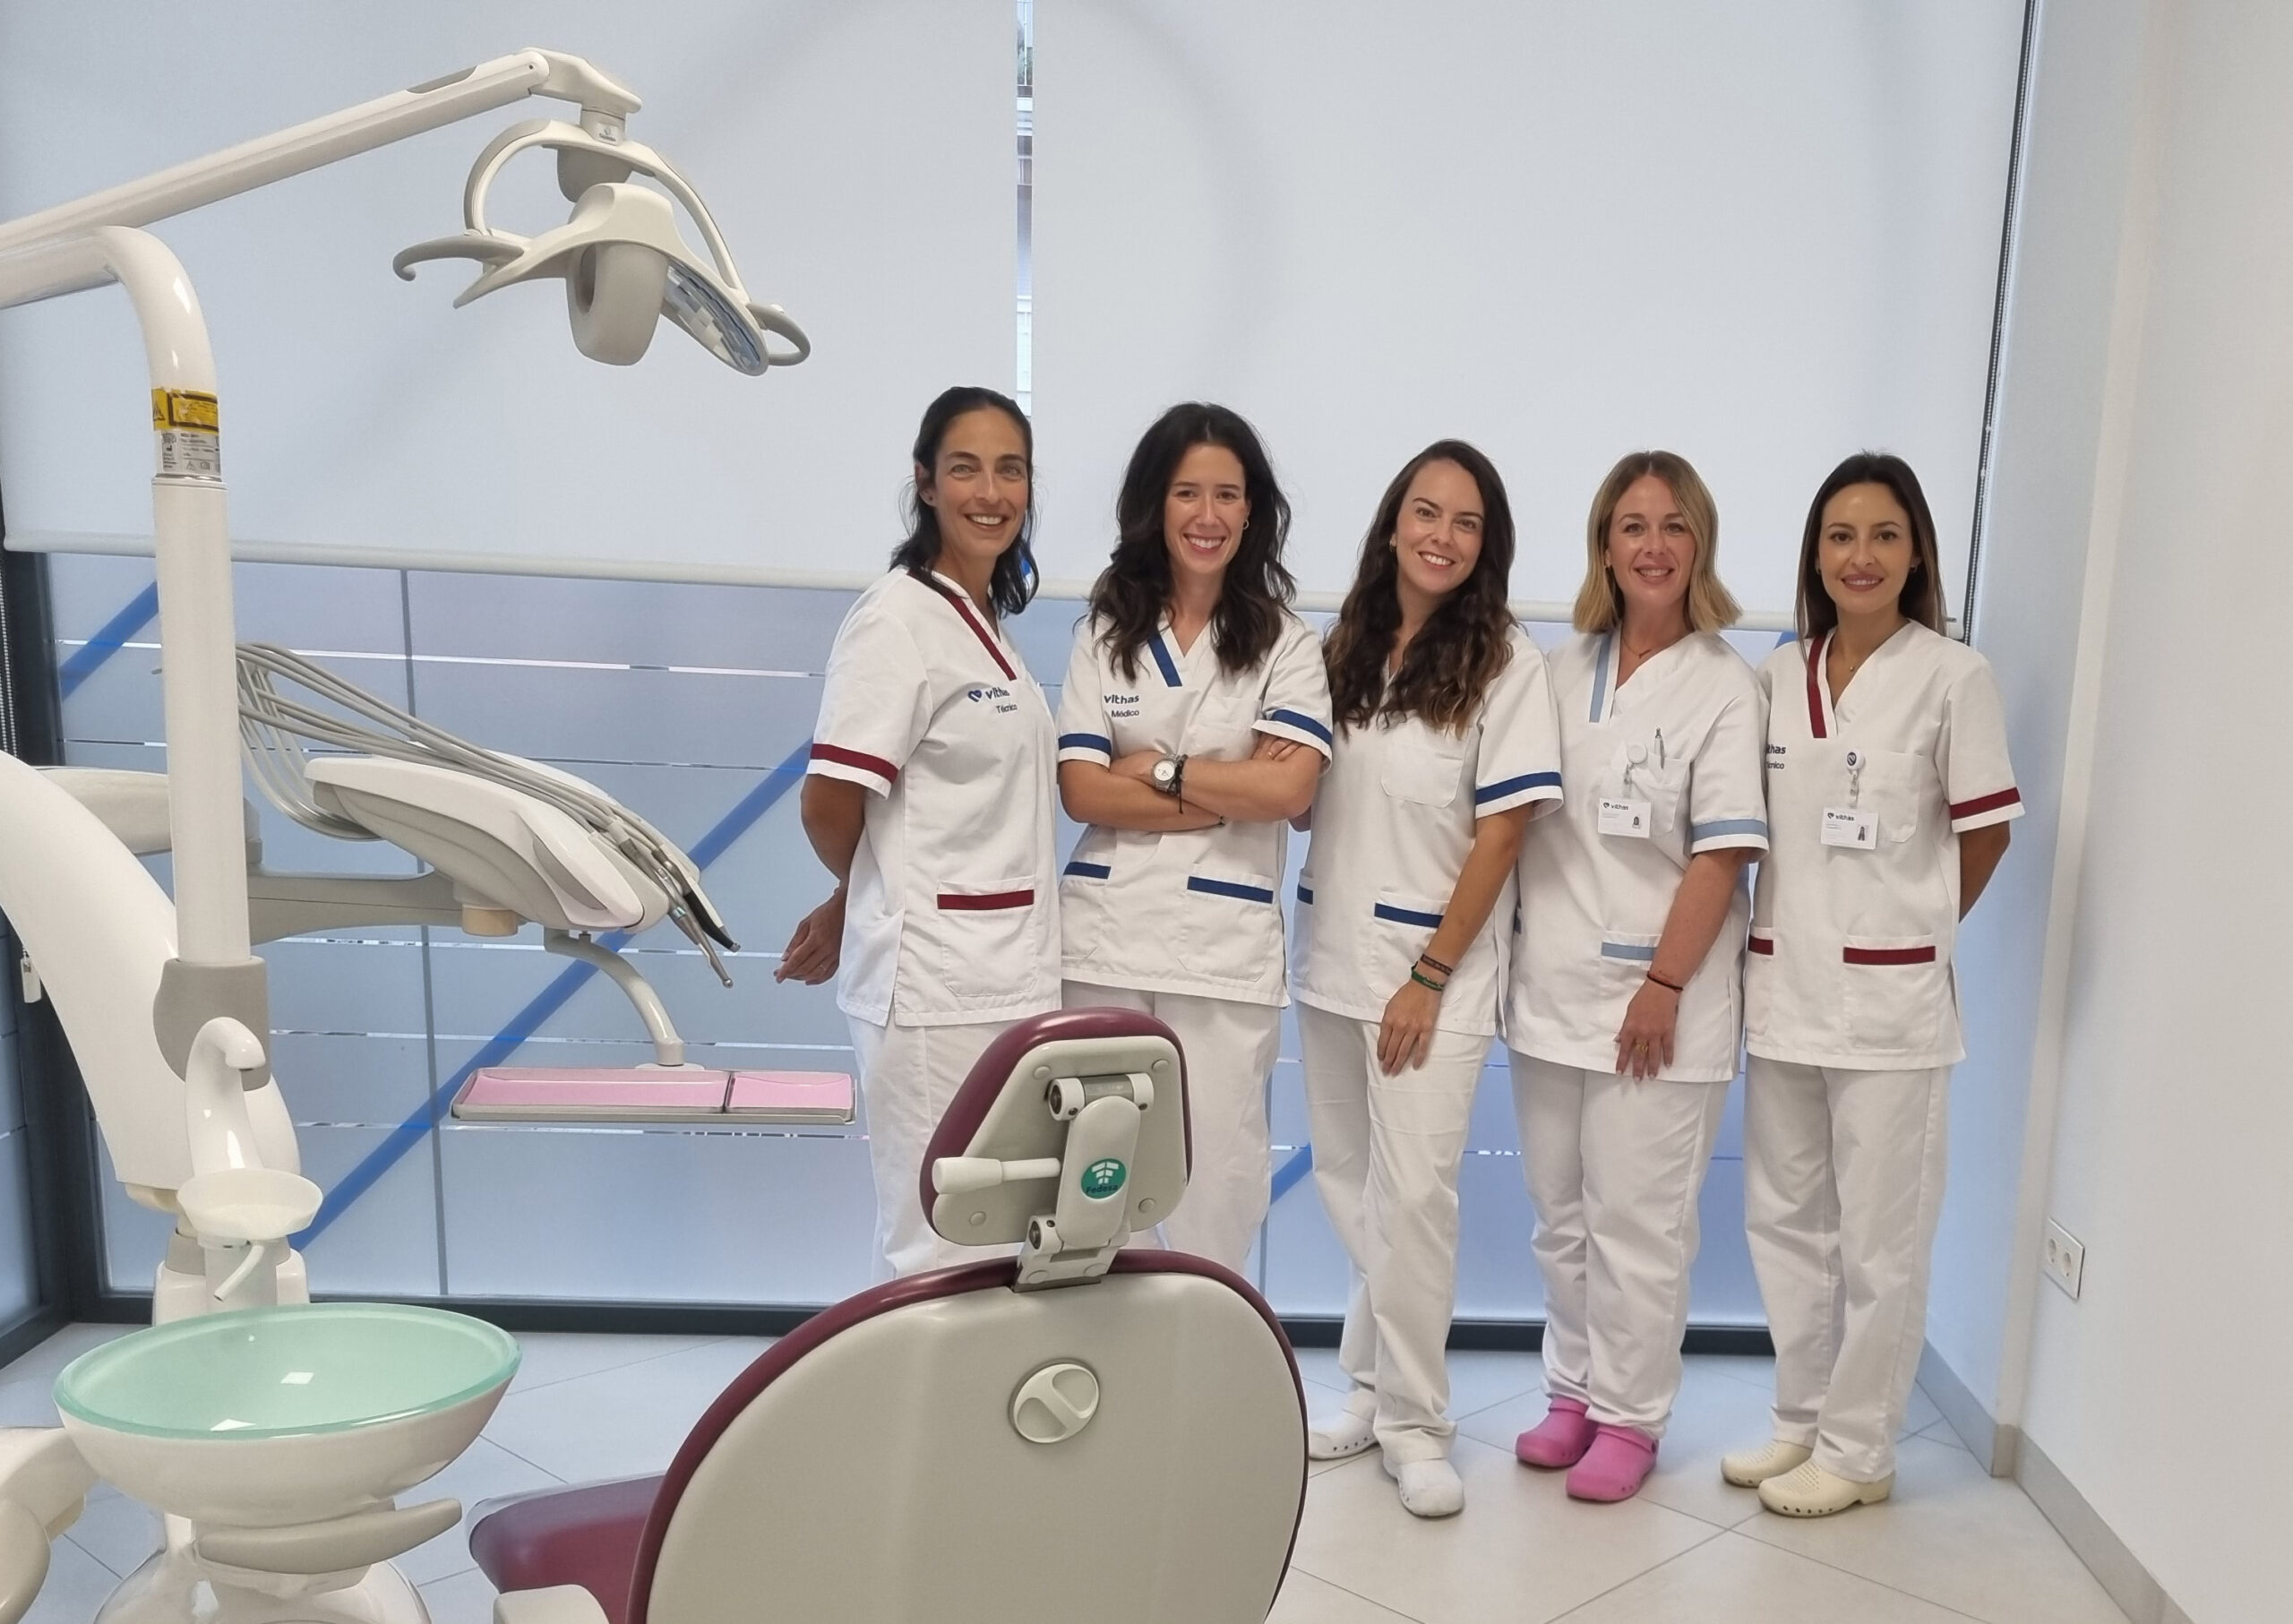 El Hospital Vithas Xanit Estepona reorganiza su Unidad Dental dirigida a adultos y niños